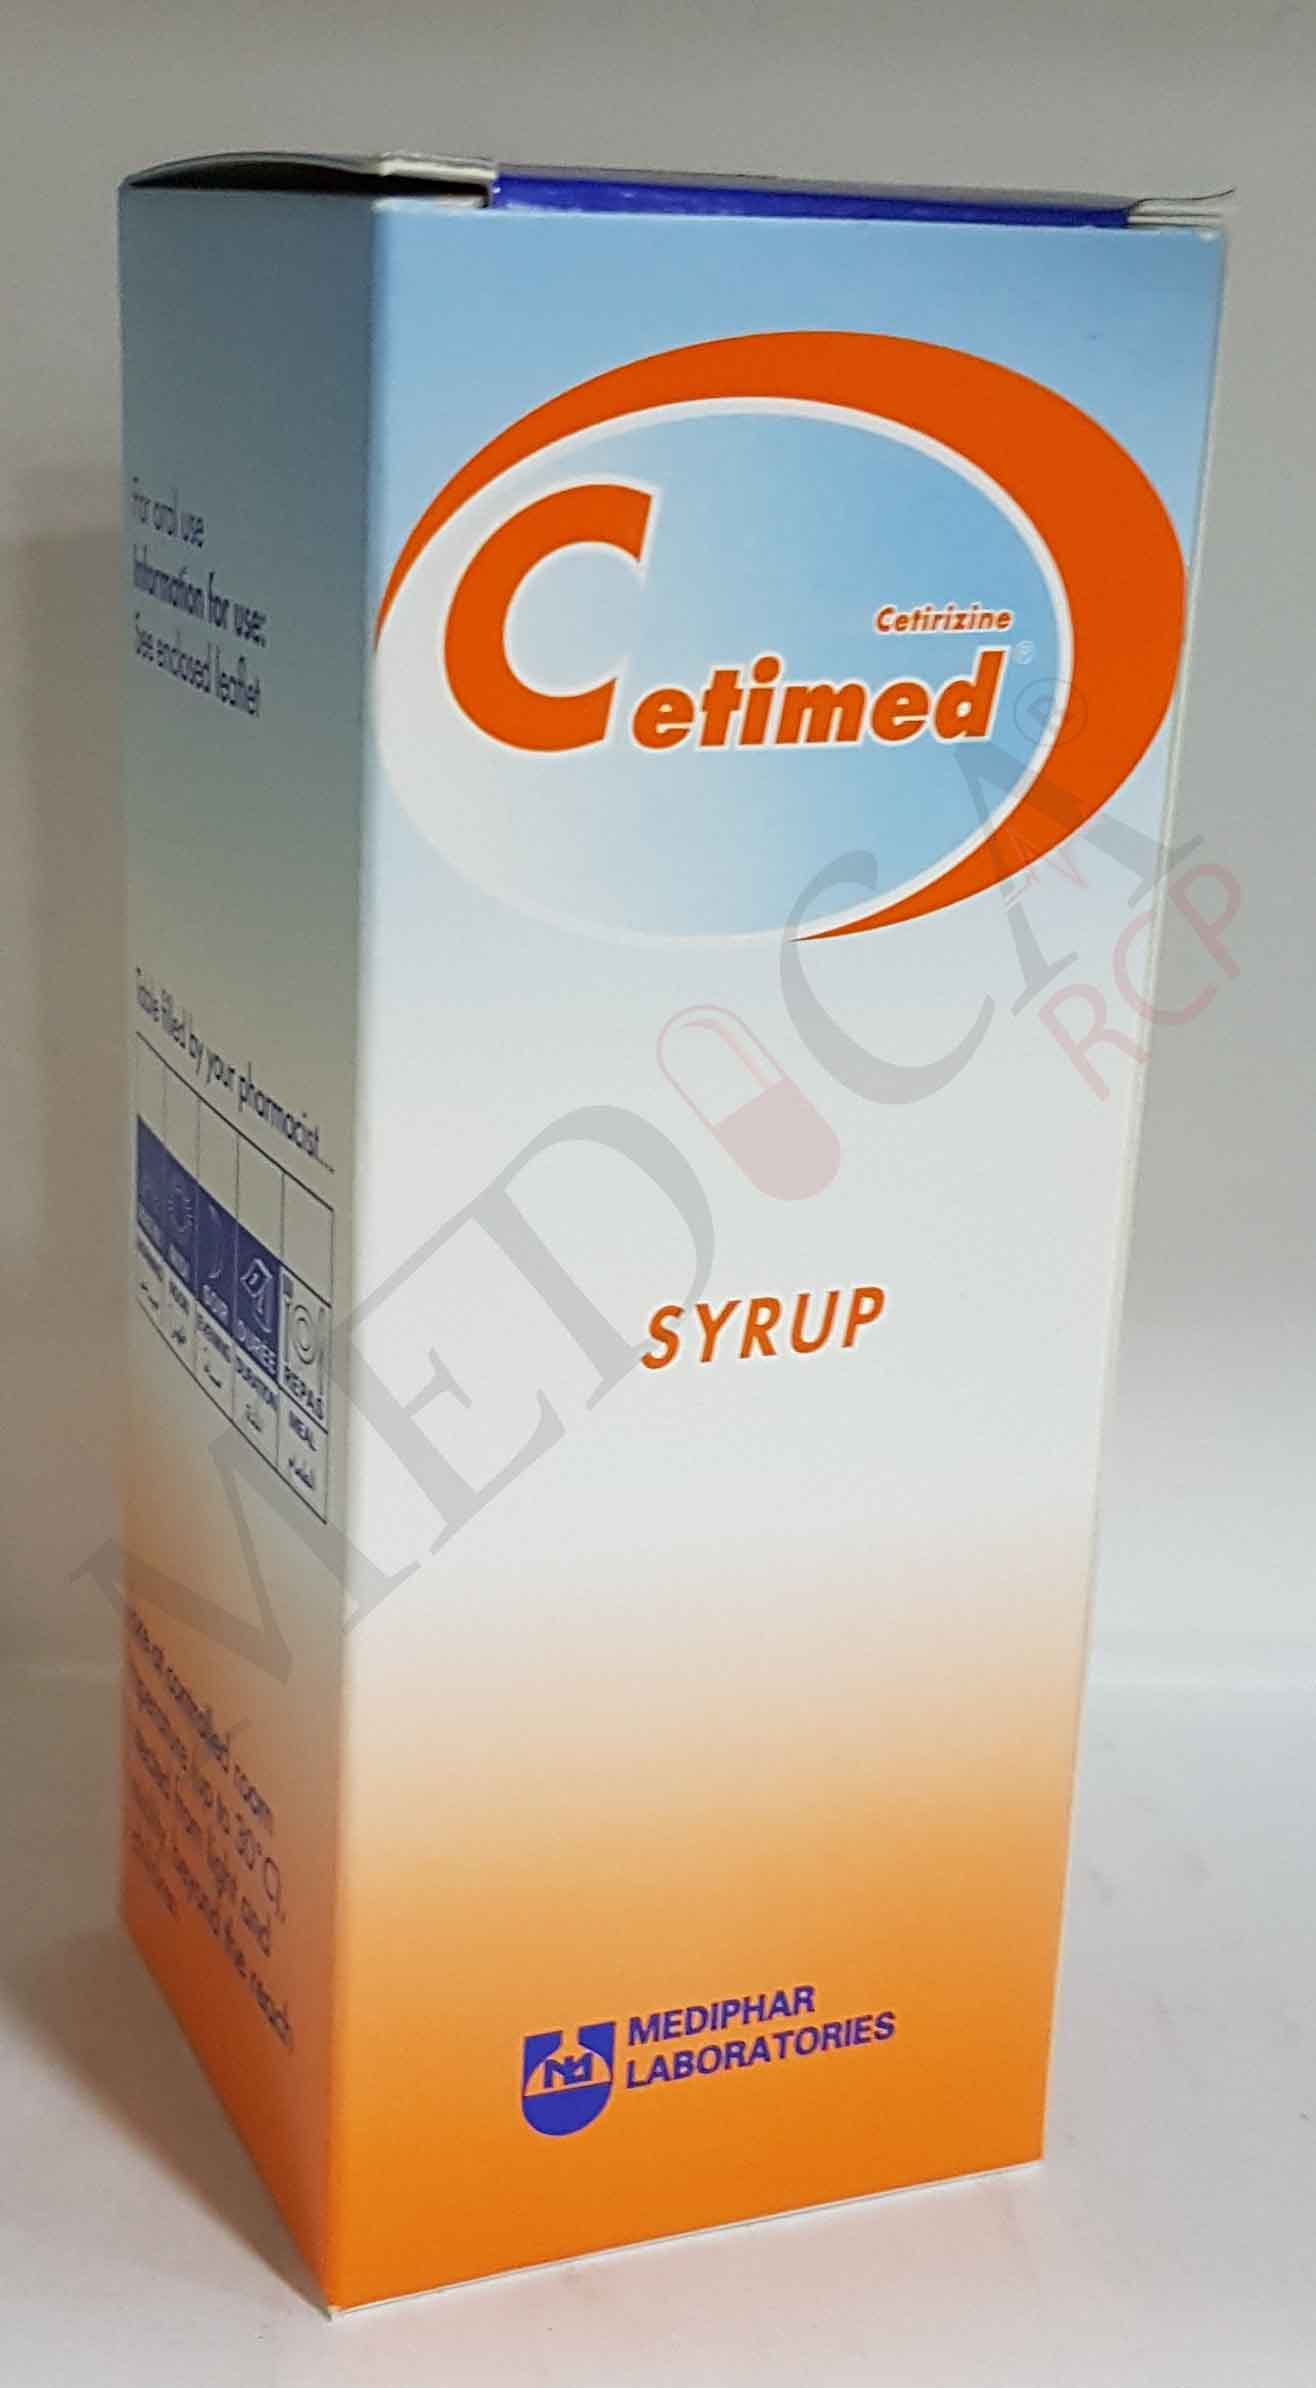 Cetimed Syrup